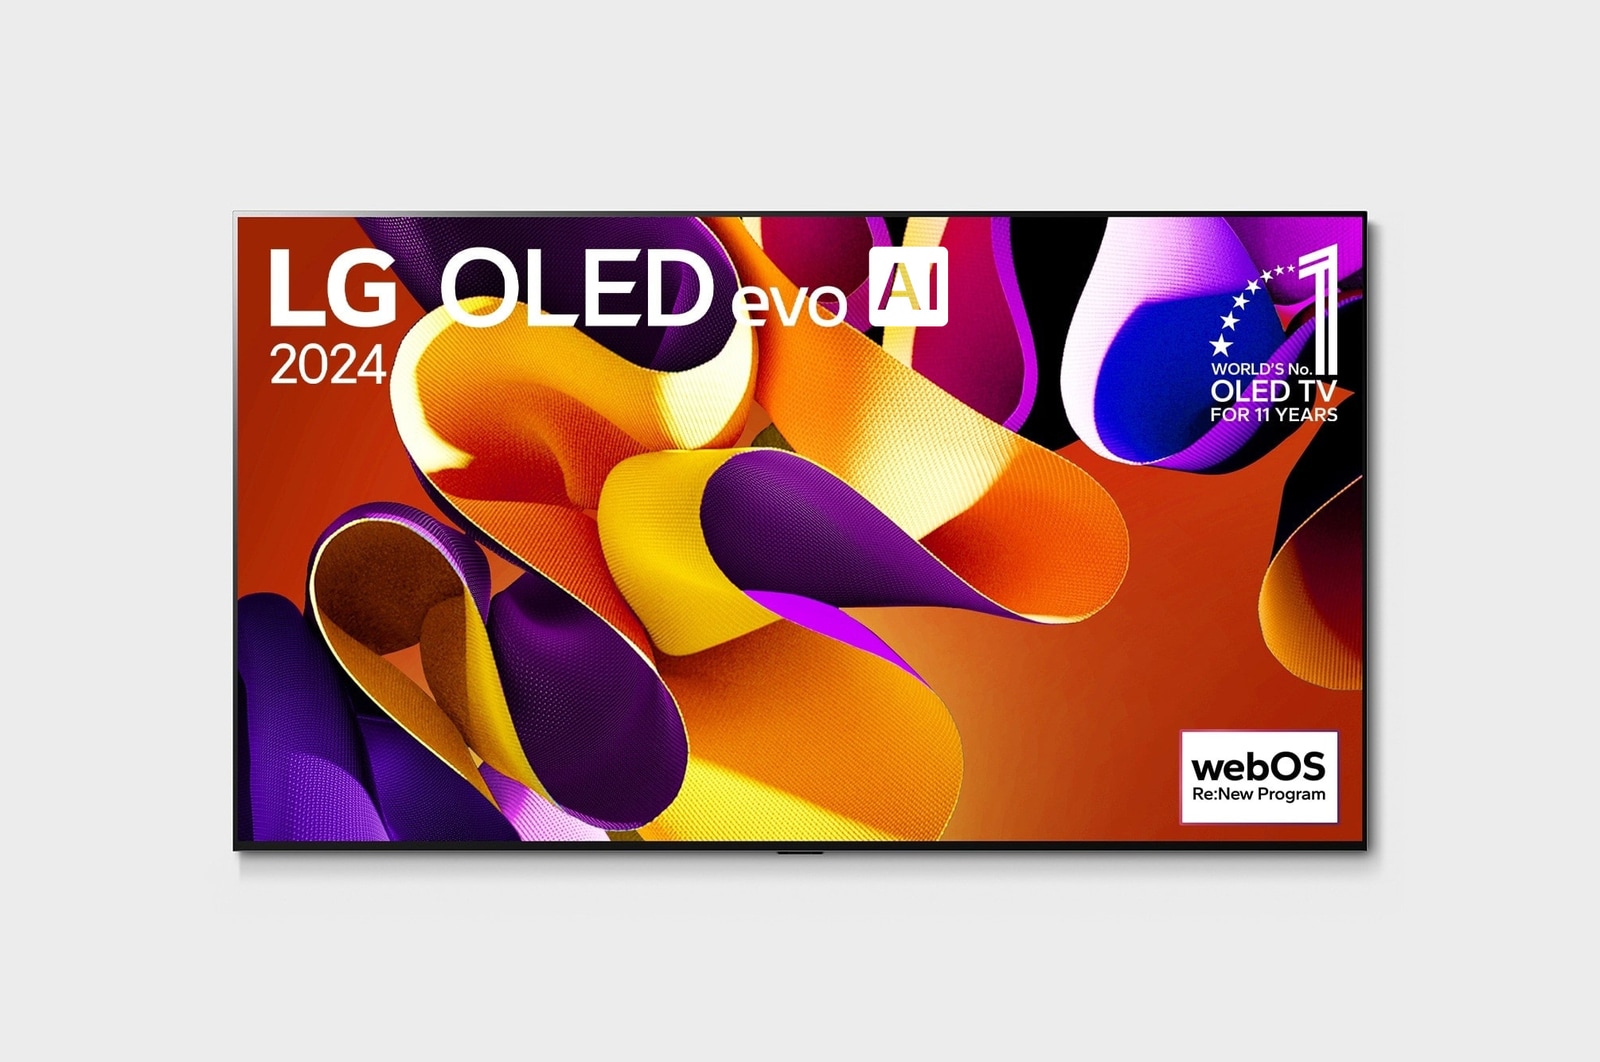 Vista frontal con la televisión LG OLED evo AI, la OLED G4, el emblema de 11 años siendo el número 1 mundial de OLED y el logotipo del programa webOS Re:New en la pantalla